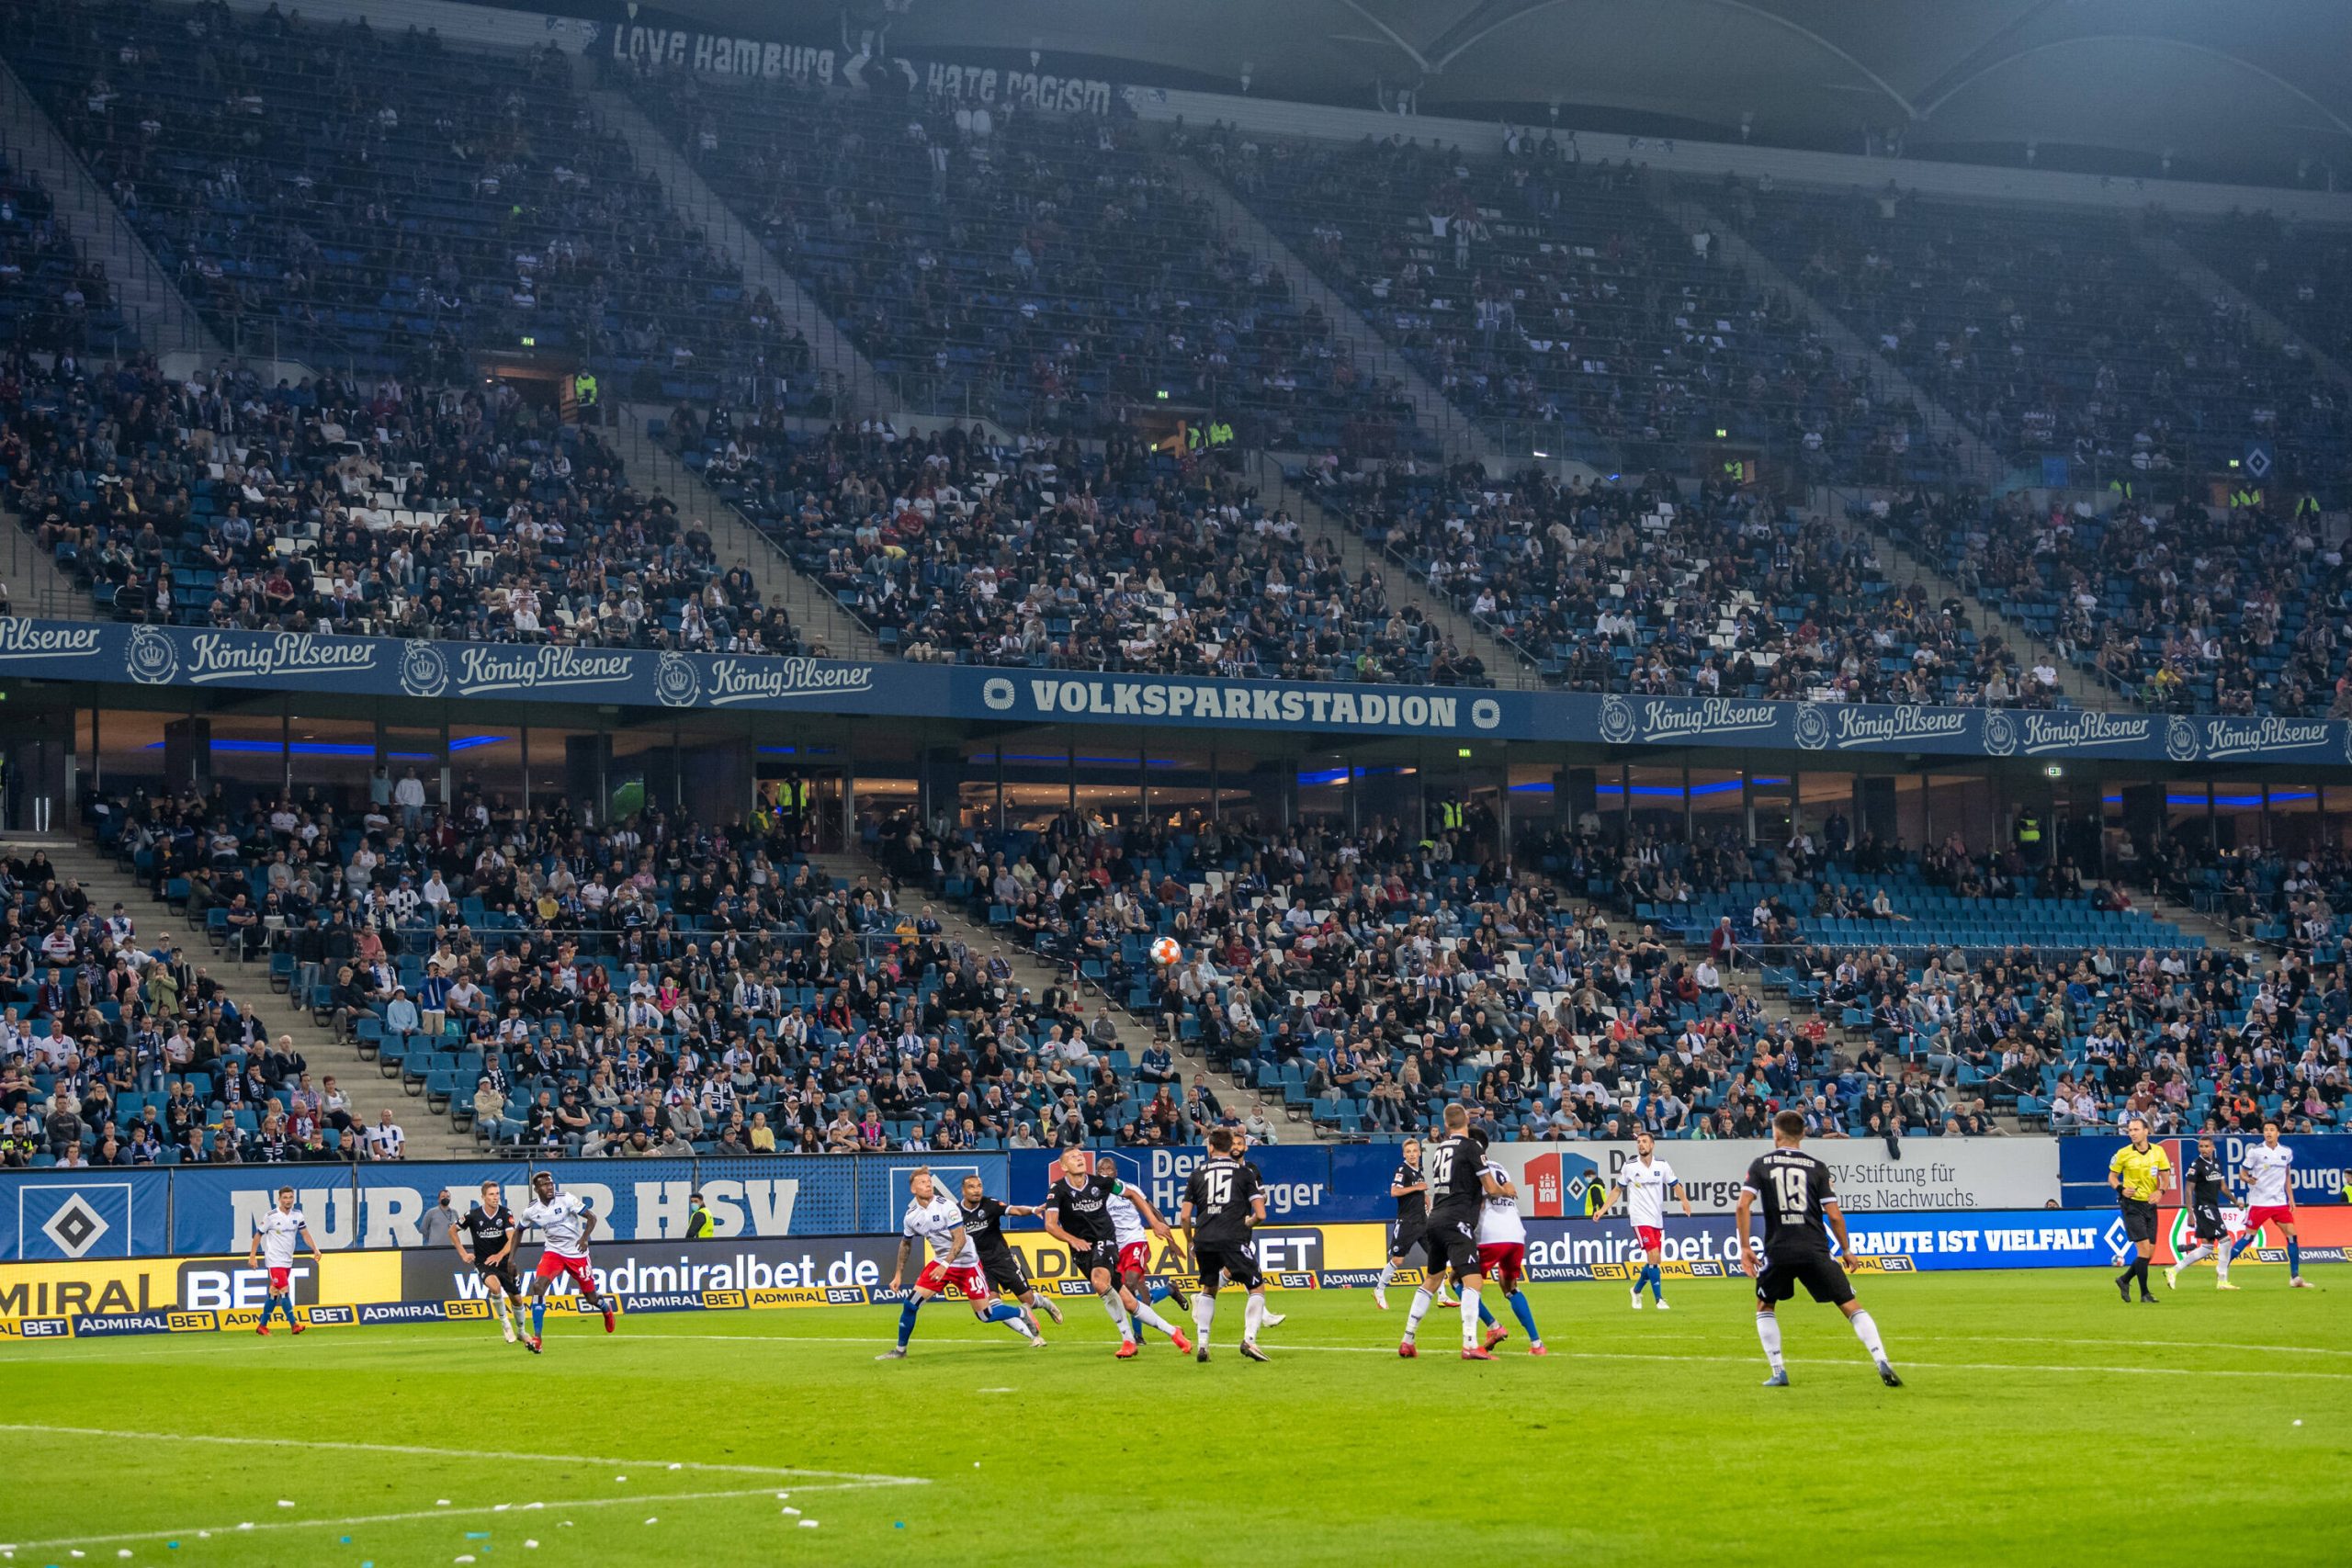 Der HSV will gegen Nürnberg mehr Zuschauer ins Stadion lassen dürfen als noch gegen Sandhausen.